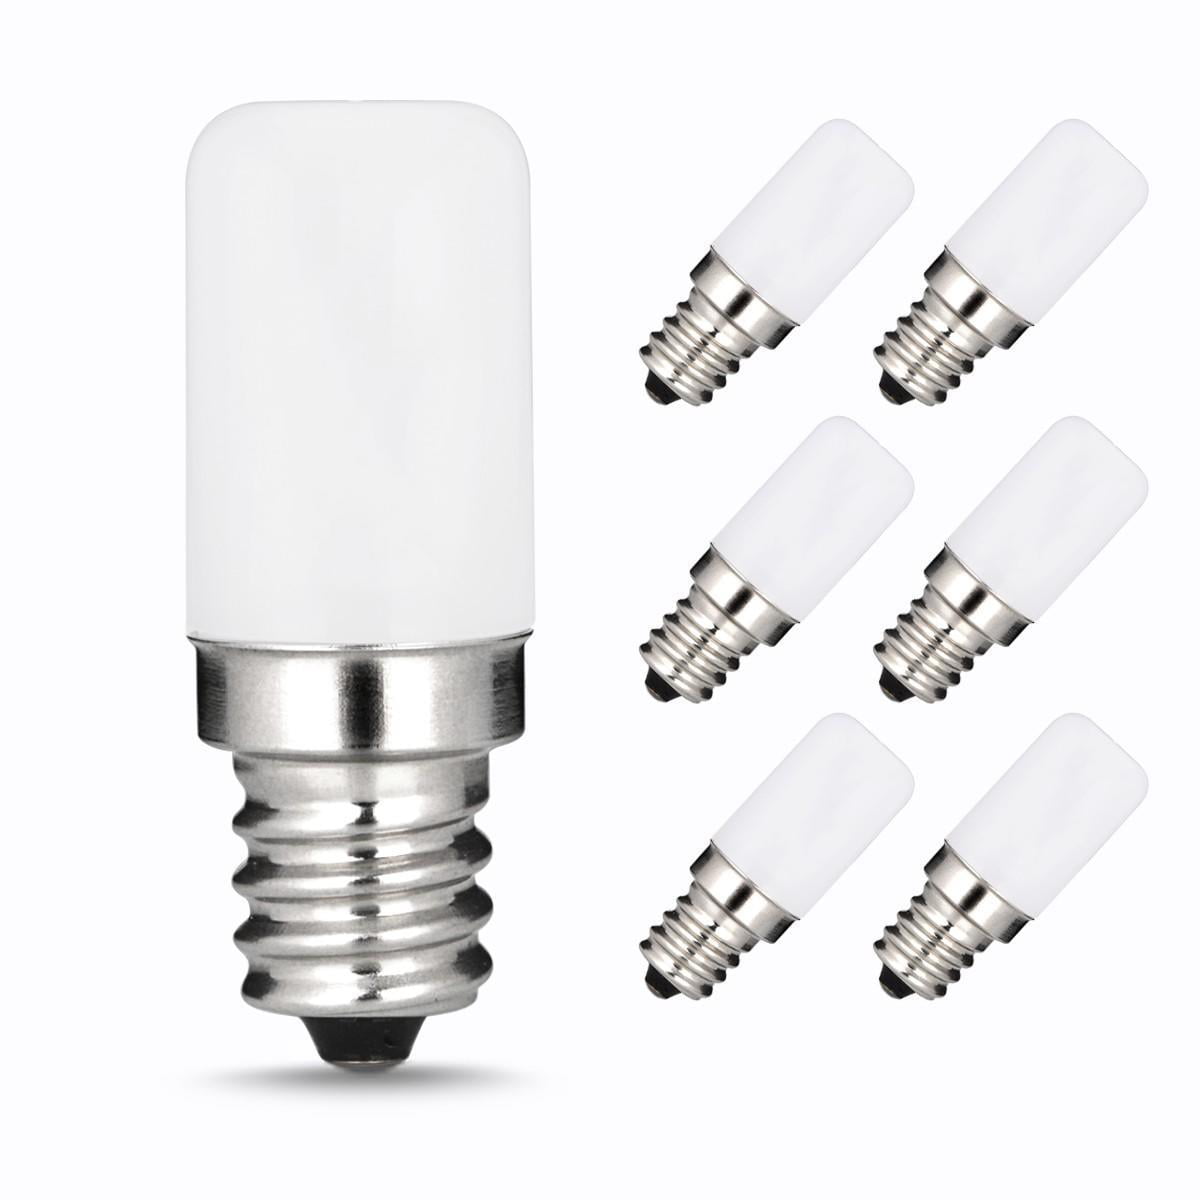 LED Night Light Bulbs, E12 Candelabra Base, 1.5W(15W Equivalent), 300K Warm White, for Bedroom